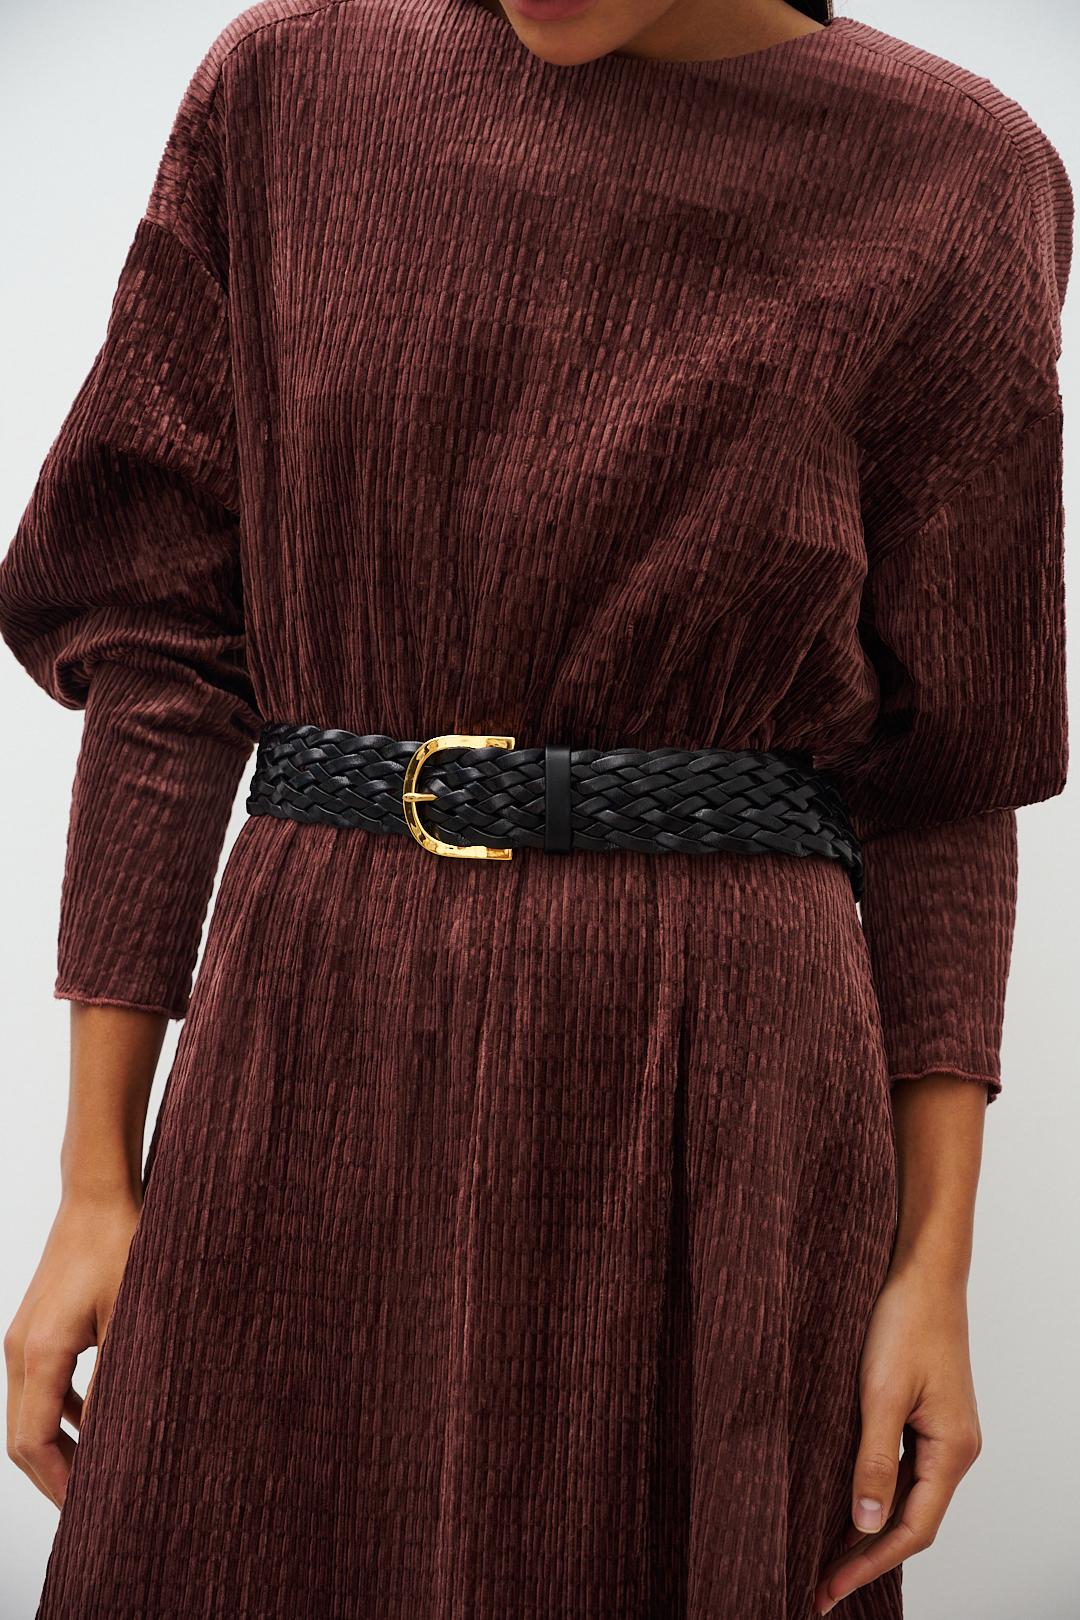 Плетеные кожаные ремни — купить в интернет-магазине Ламода